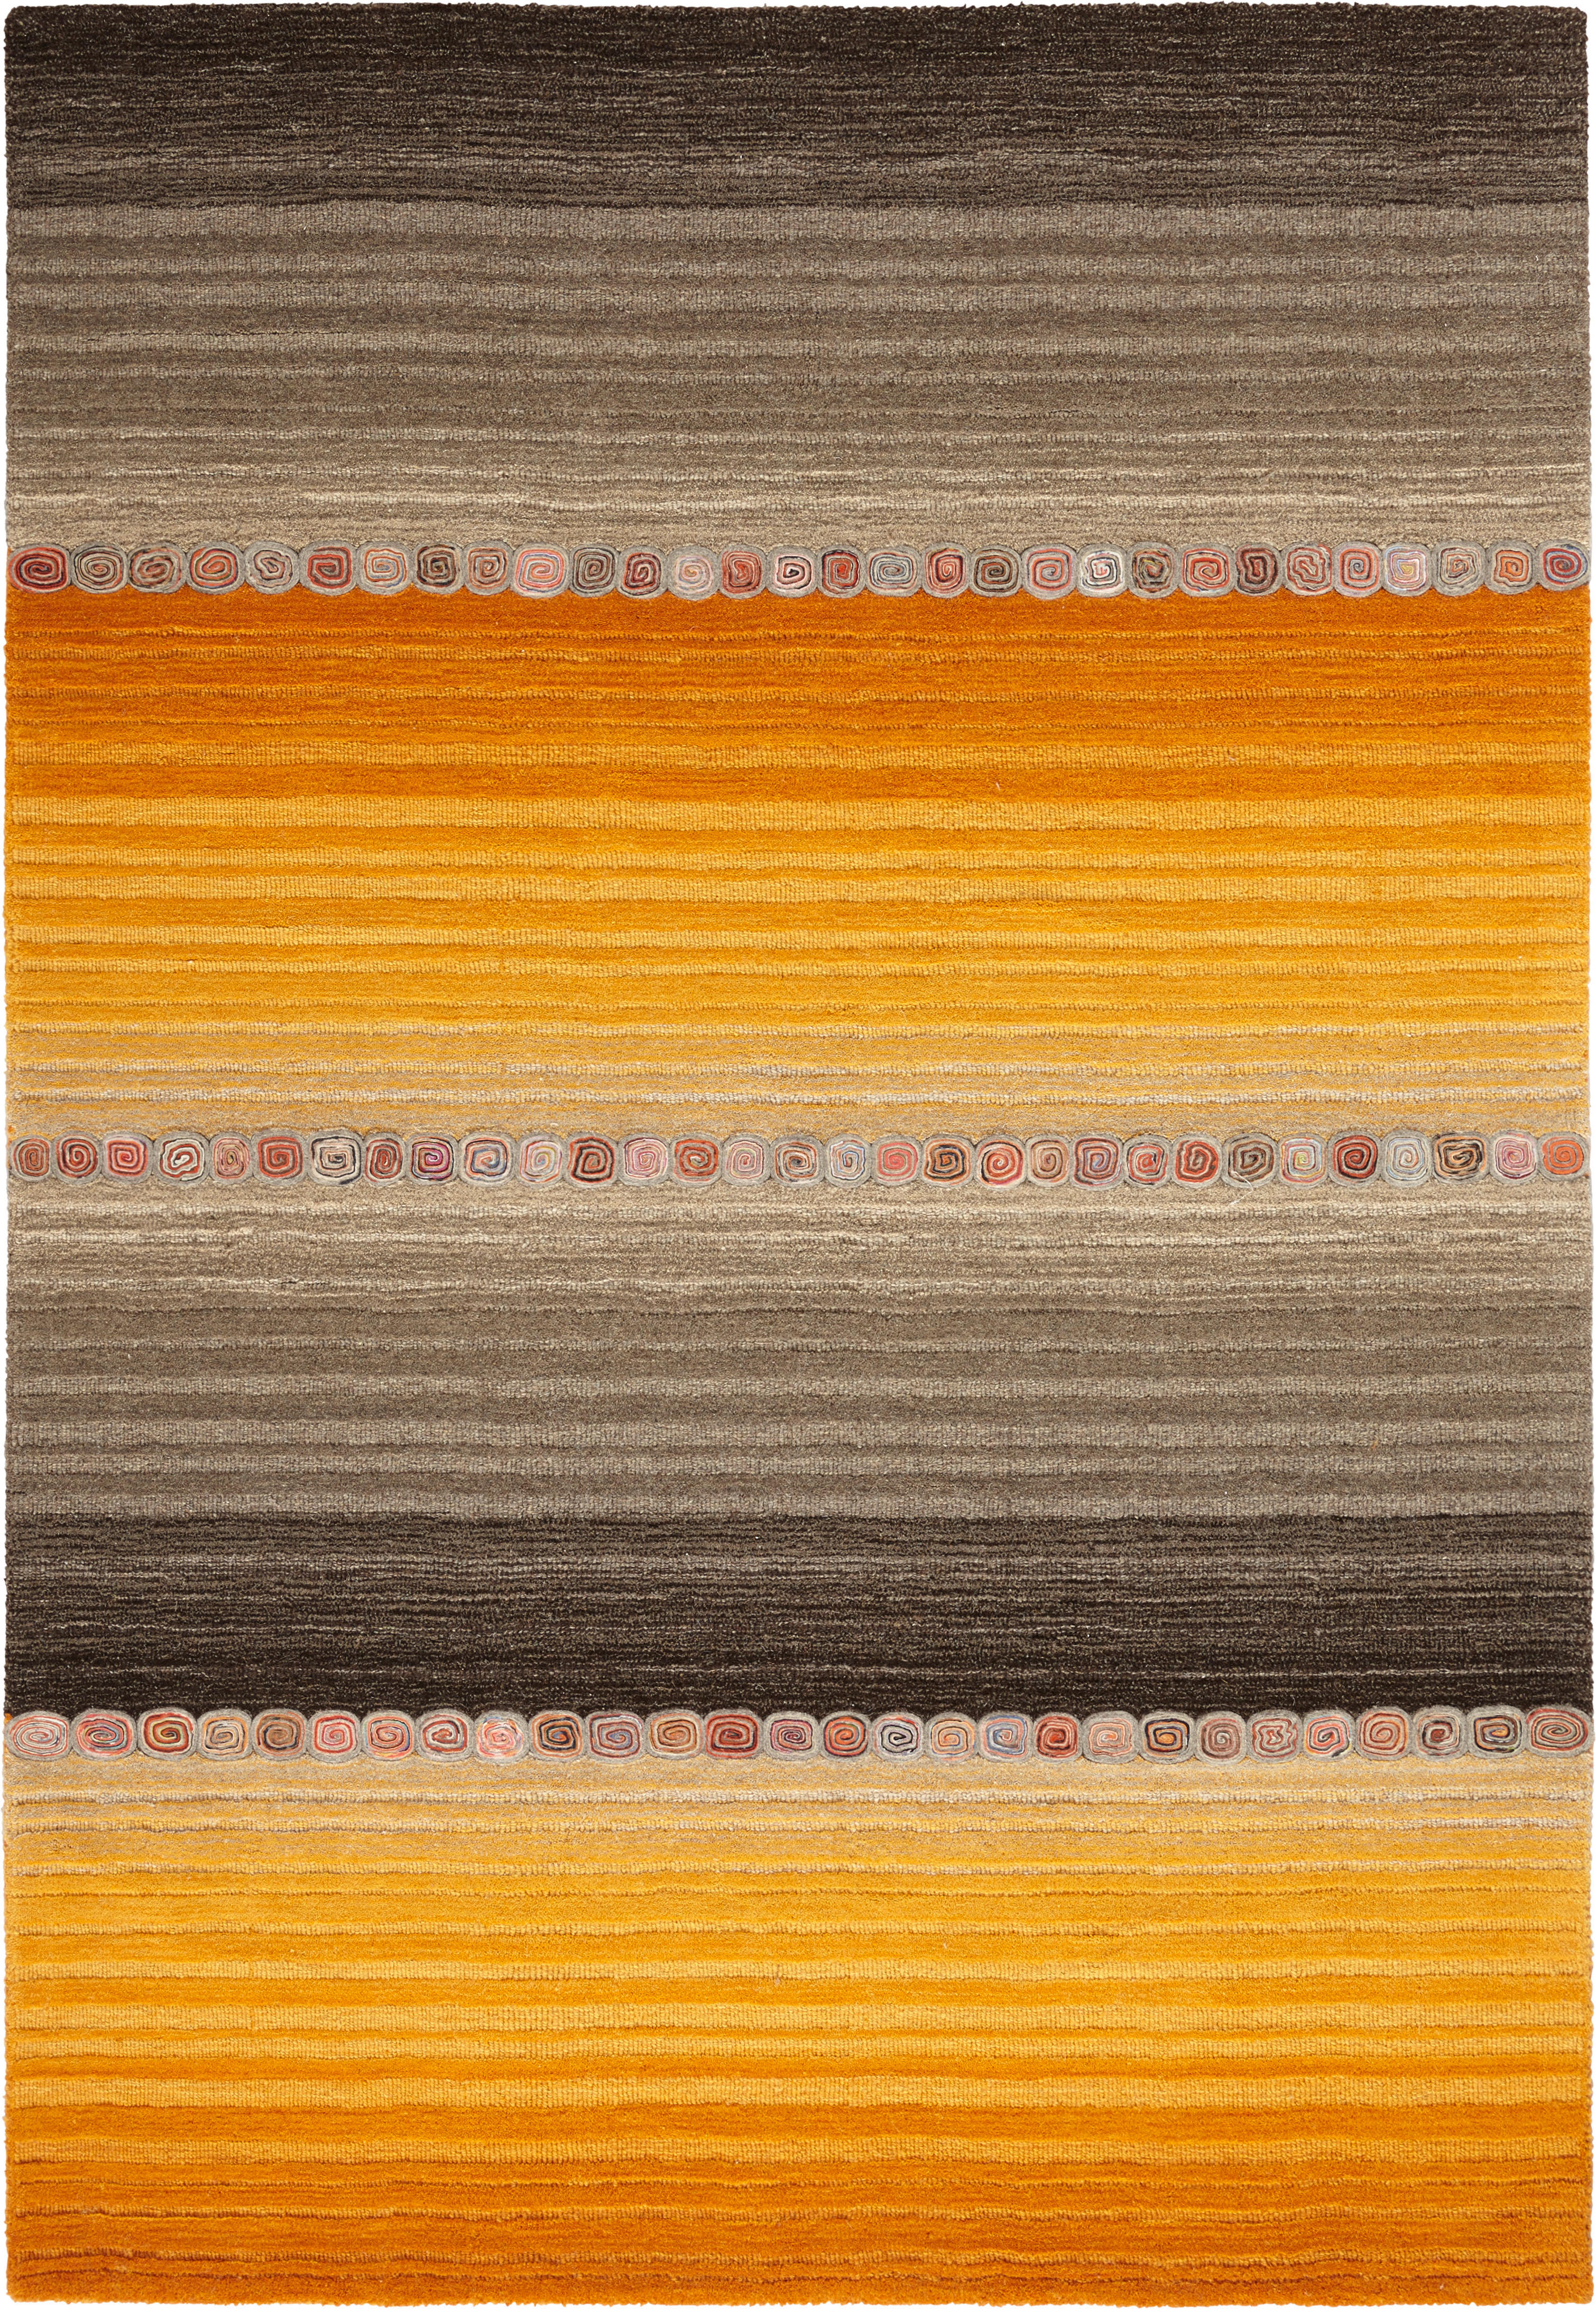 Cazaris ORIENTÁLNÍ KOBEREC, 200/300 cm, hnědá, oranžová - hnědá, oranžová